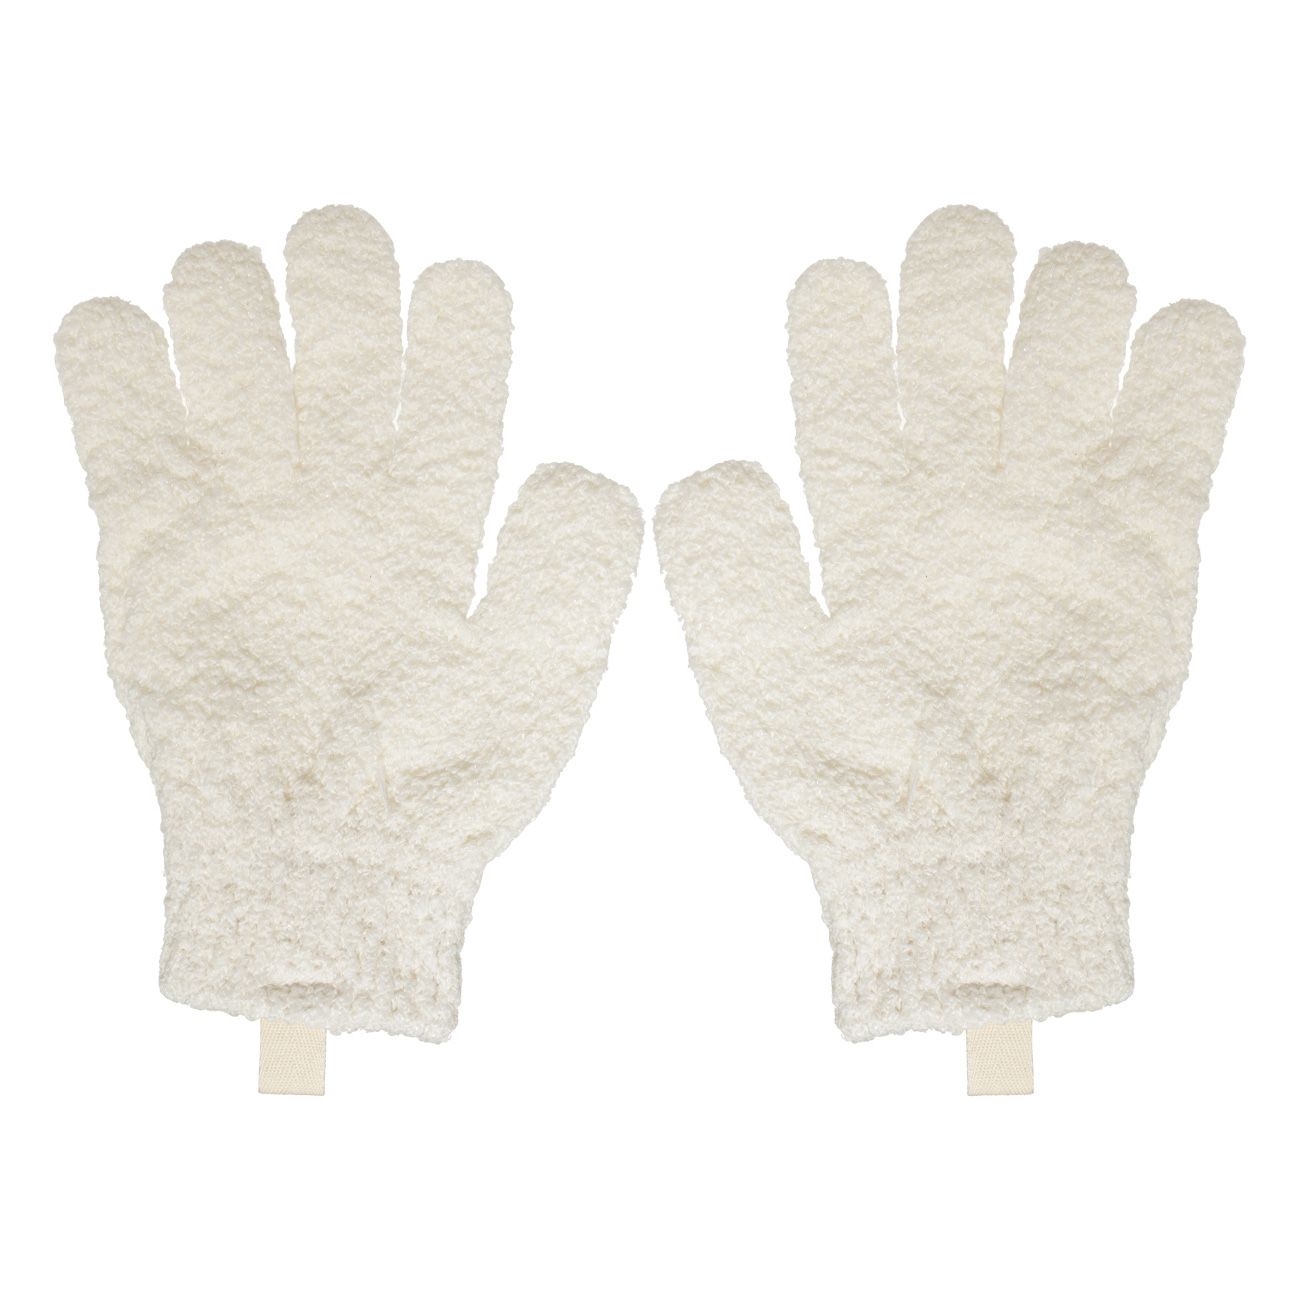 Перчатка для мытья тела Kuchenland отшелушивающая, полиэстер, молочная, 21 см, 2 шт